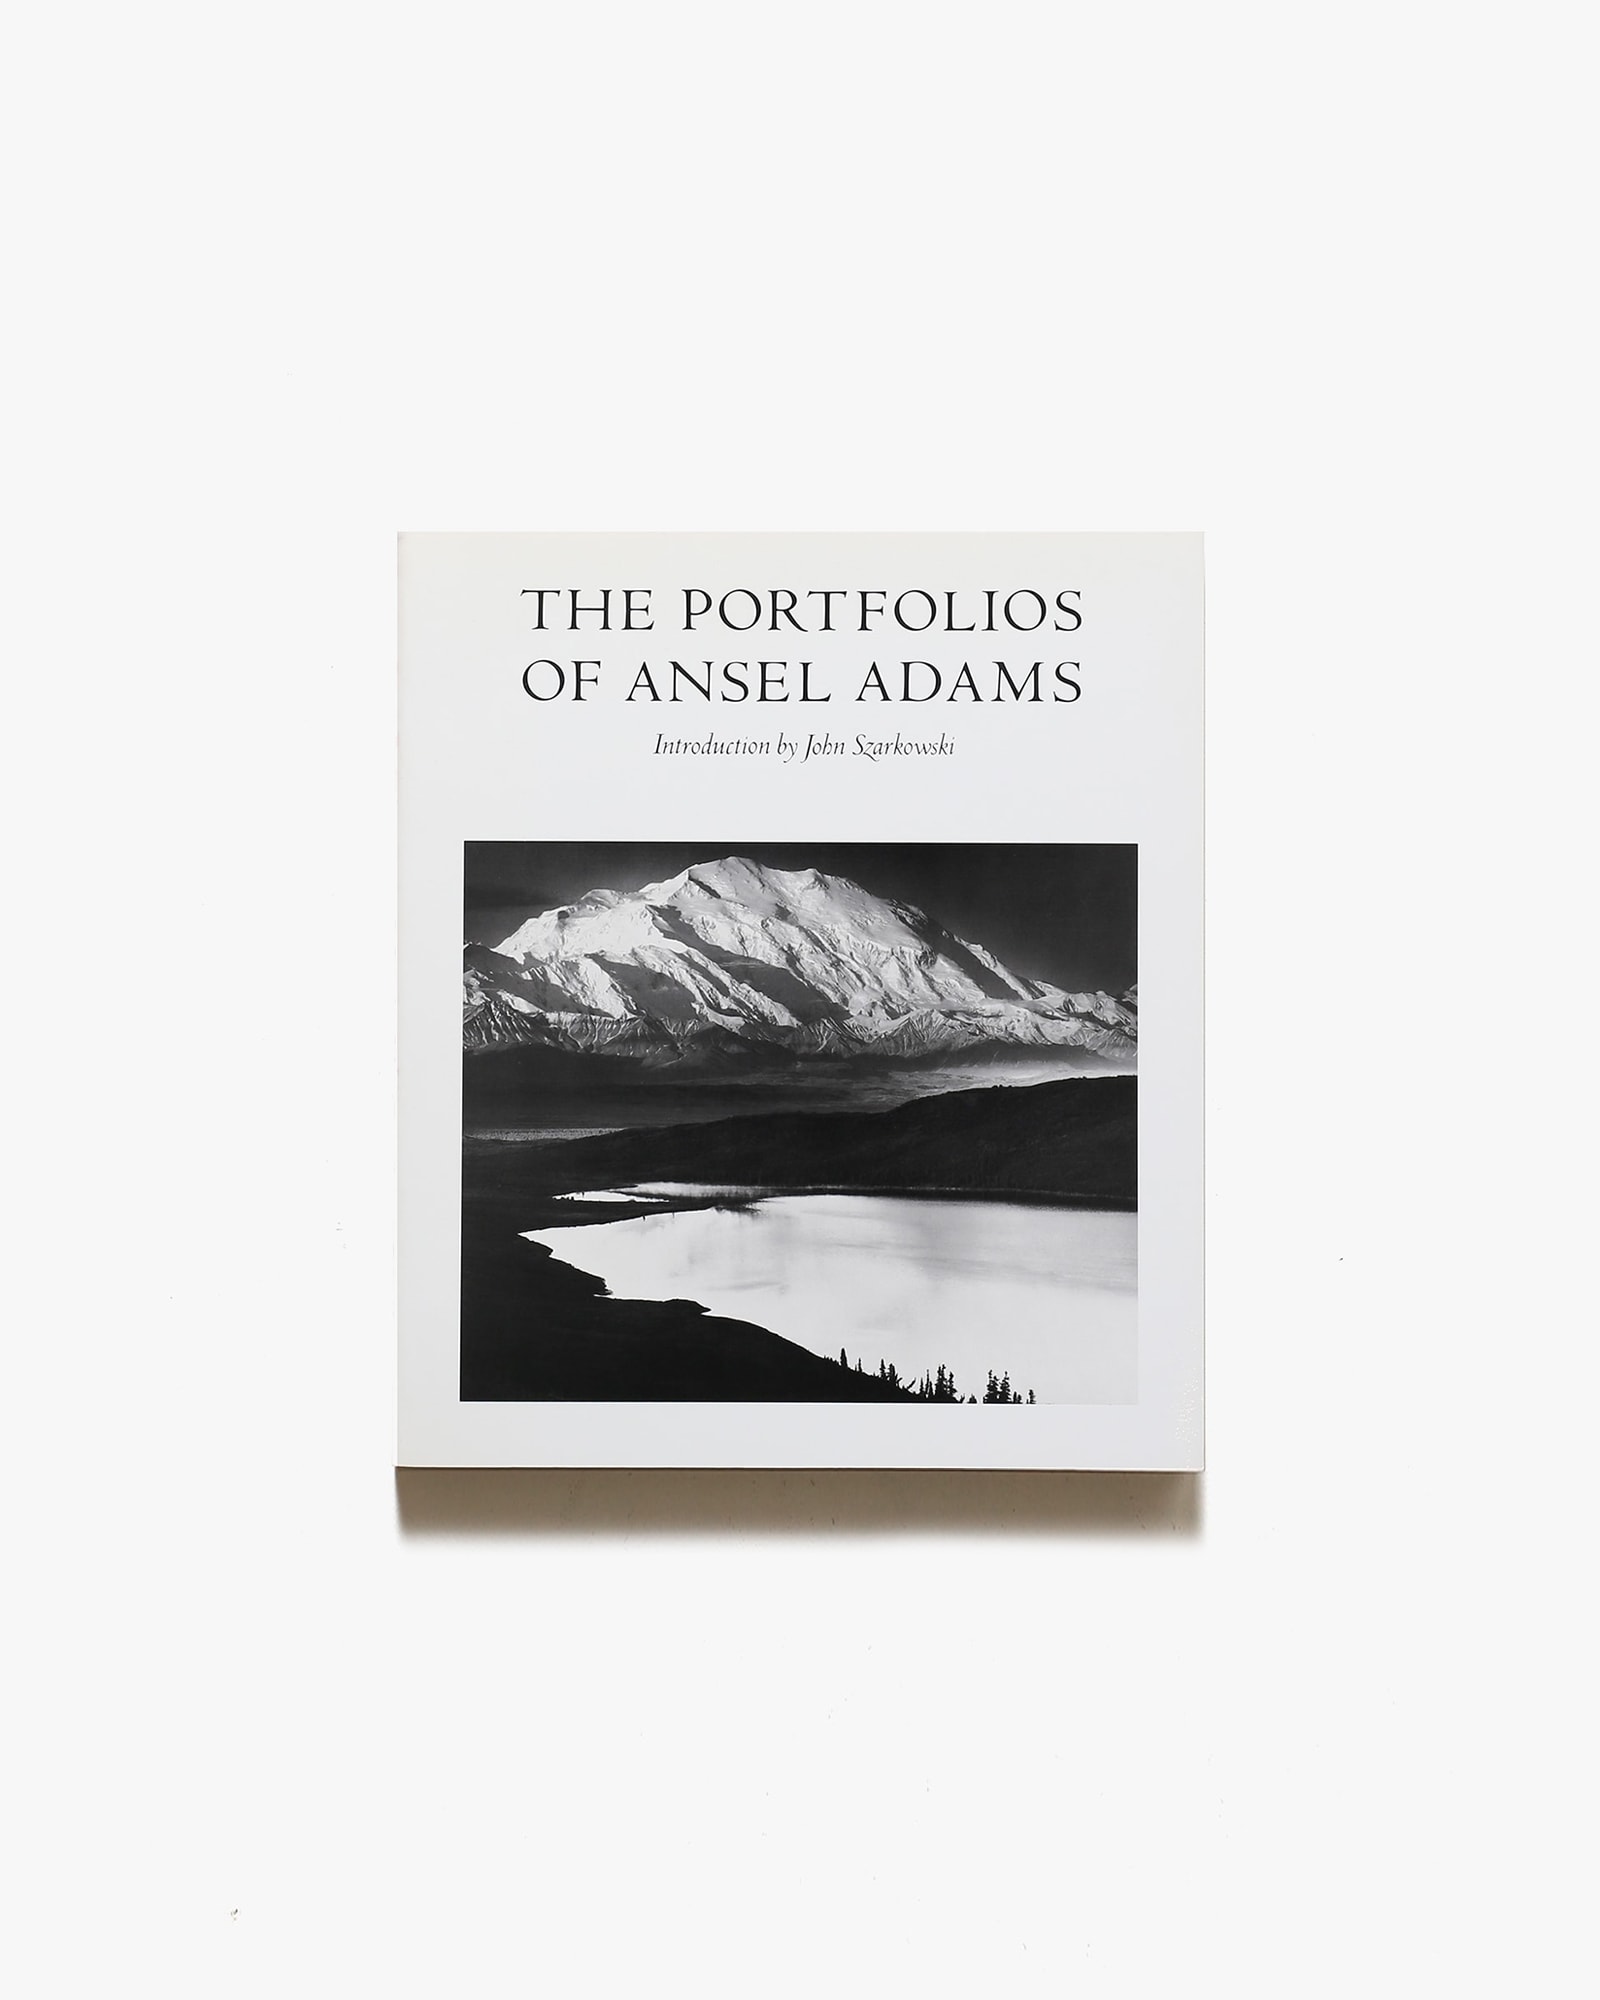 アンセル・アダムス写真集『幻想のアメリカ西部』中の写真にもしみが 